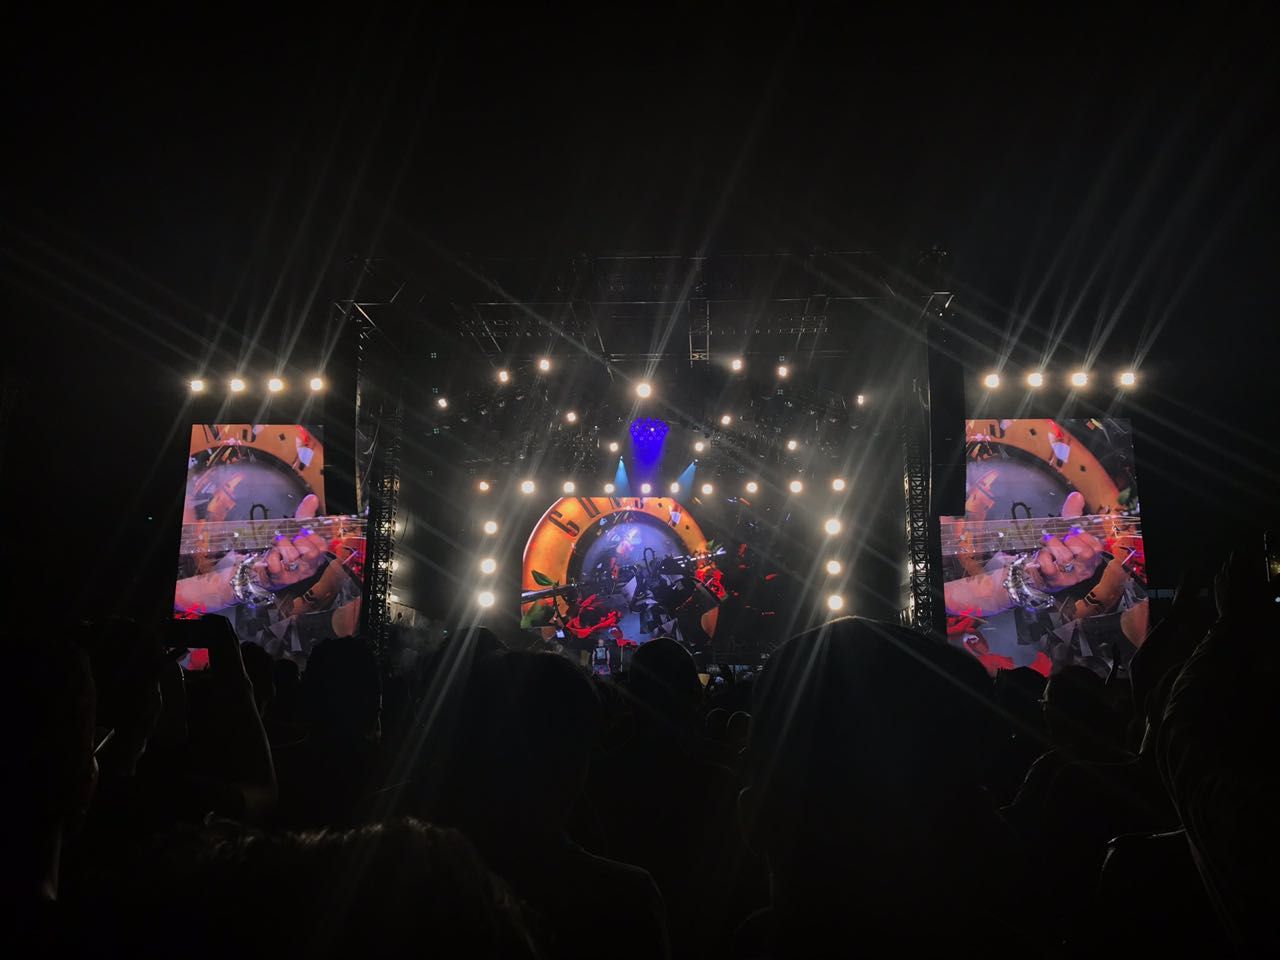 Keseruan konser Guns N' Roses Jakarta pada Kamis (8/11) di Stadion Utama Gelora Bung Karno (SUGBK) Senayan, Jakarta